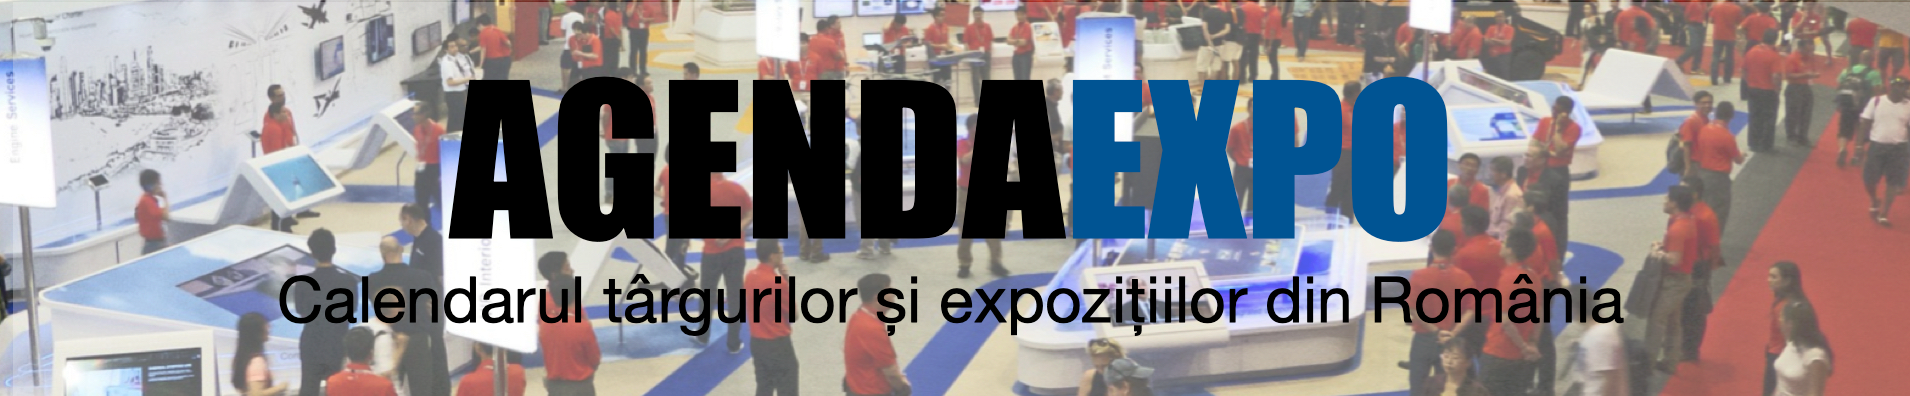 AGENDA EXPO | Calendarul târgurilor și expozițiilor din România